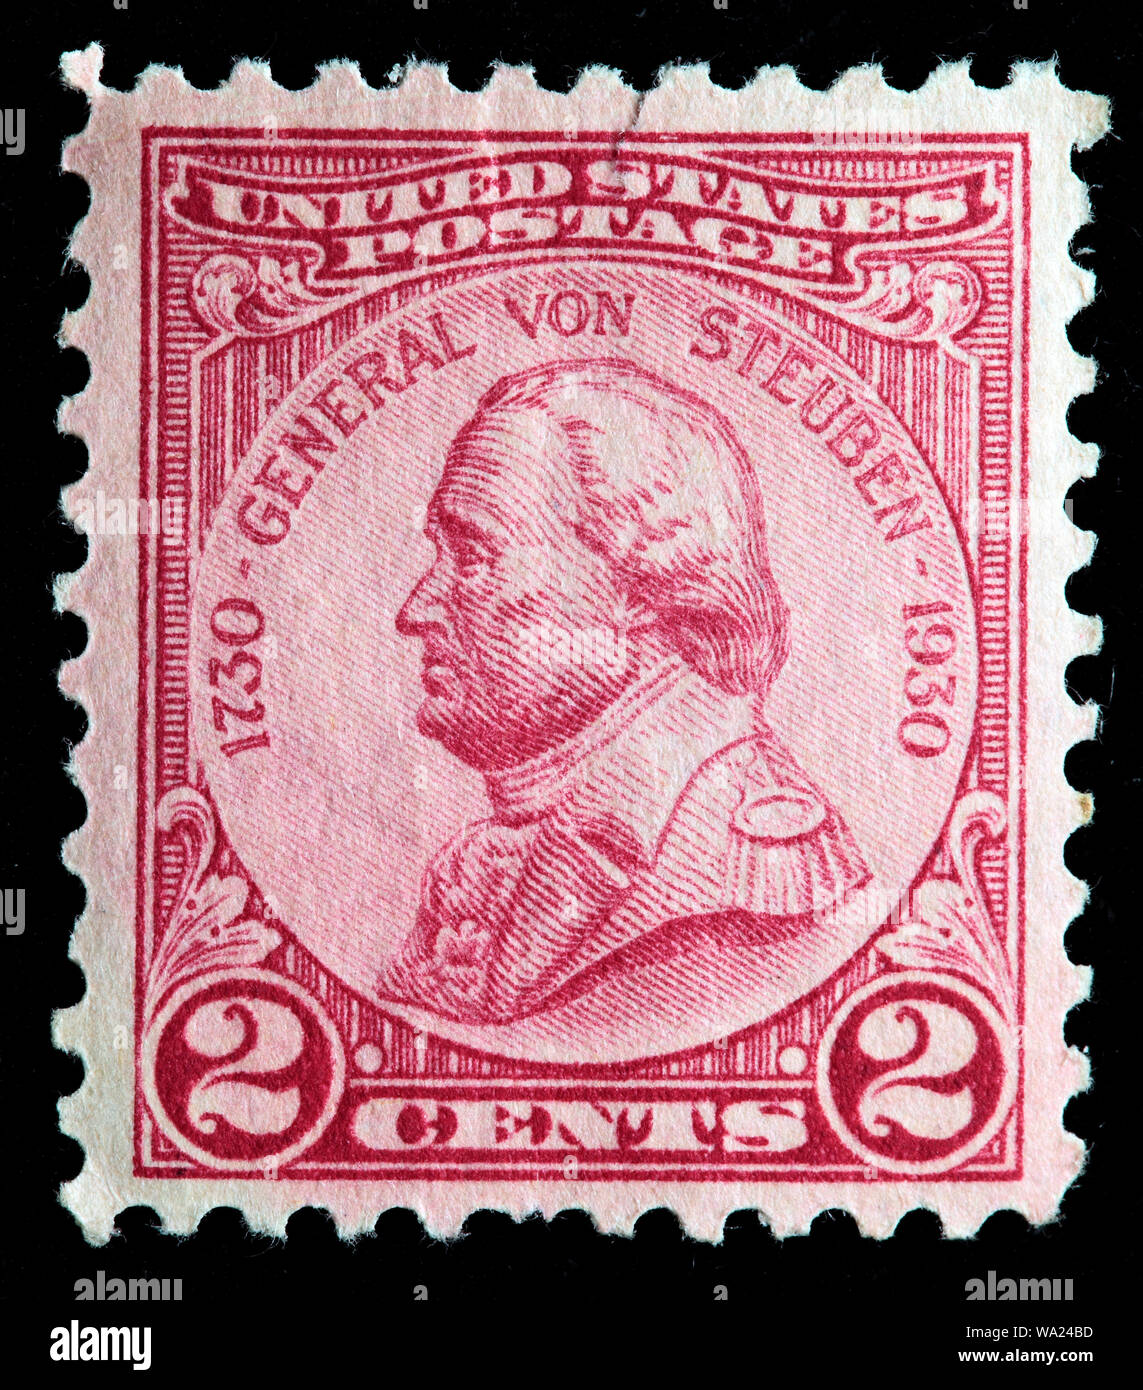 Friedrich Wilhelm von Steuben (1730-1794), Major général, timbre-poste, USA, 1930 Banque D'Images